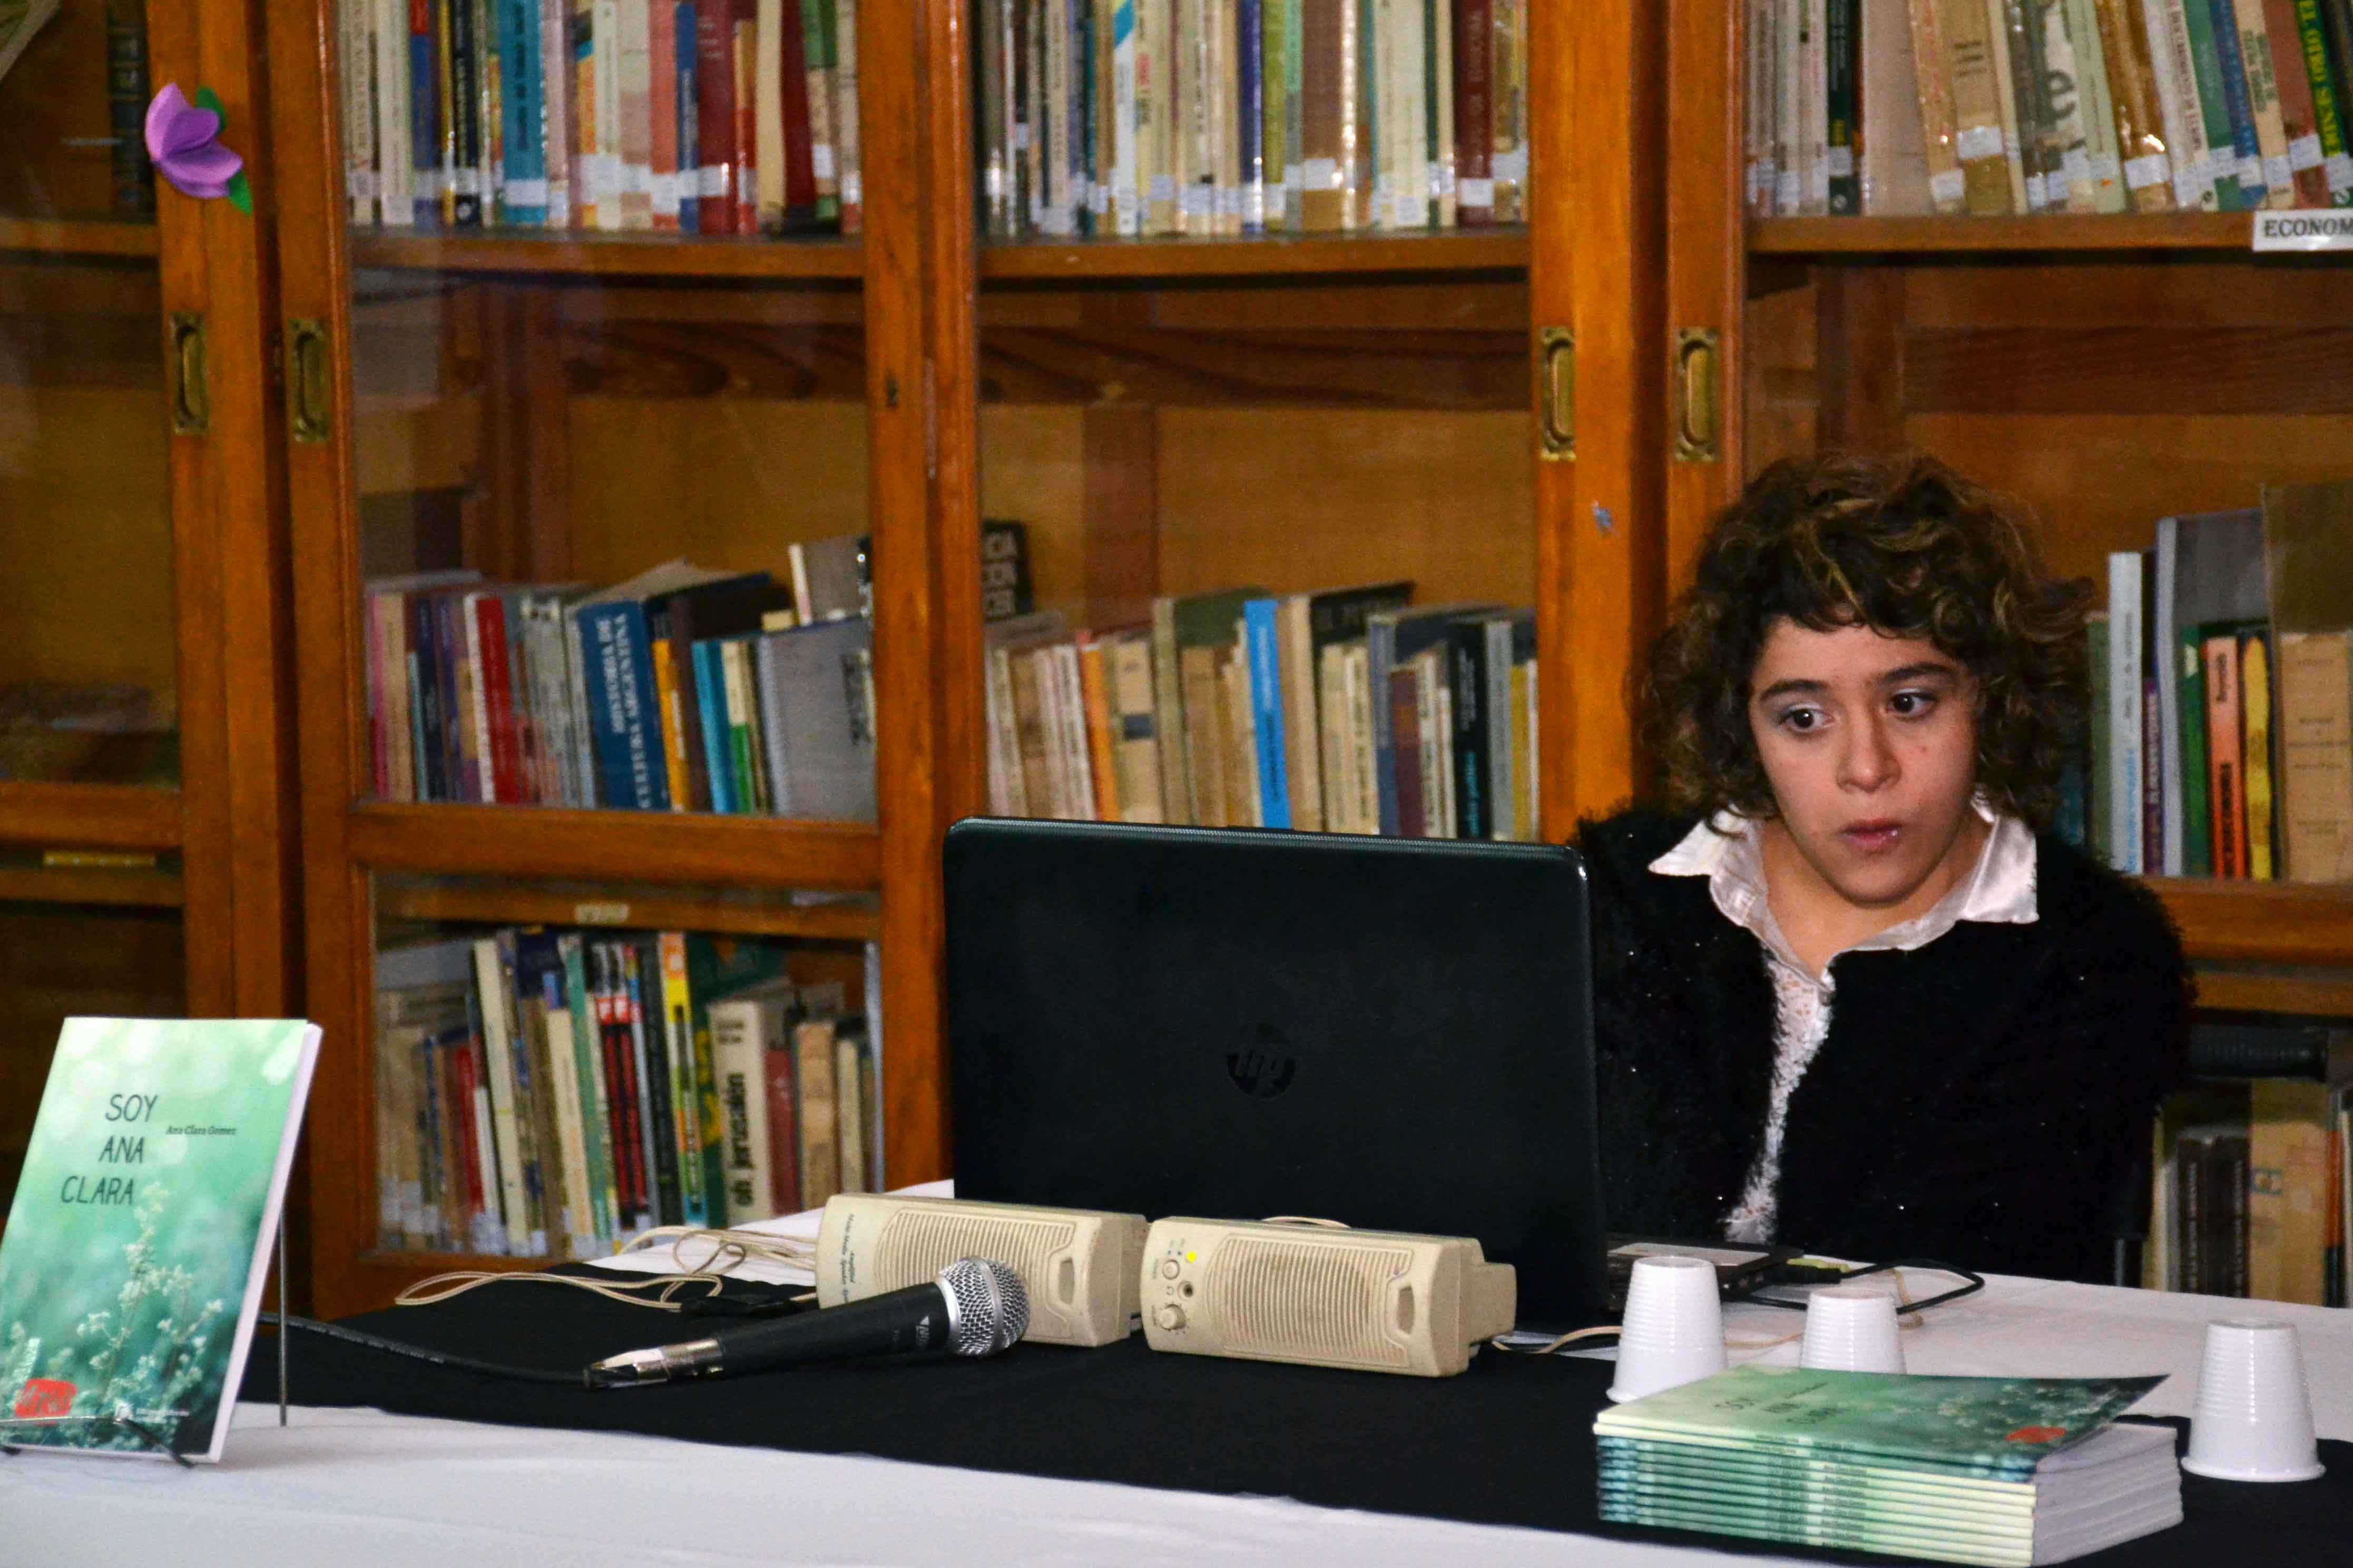 Presentación del libro - Soy Ana Clara - Almafuerte (3)